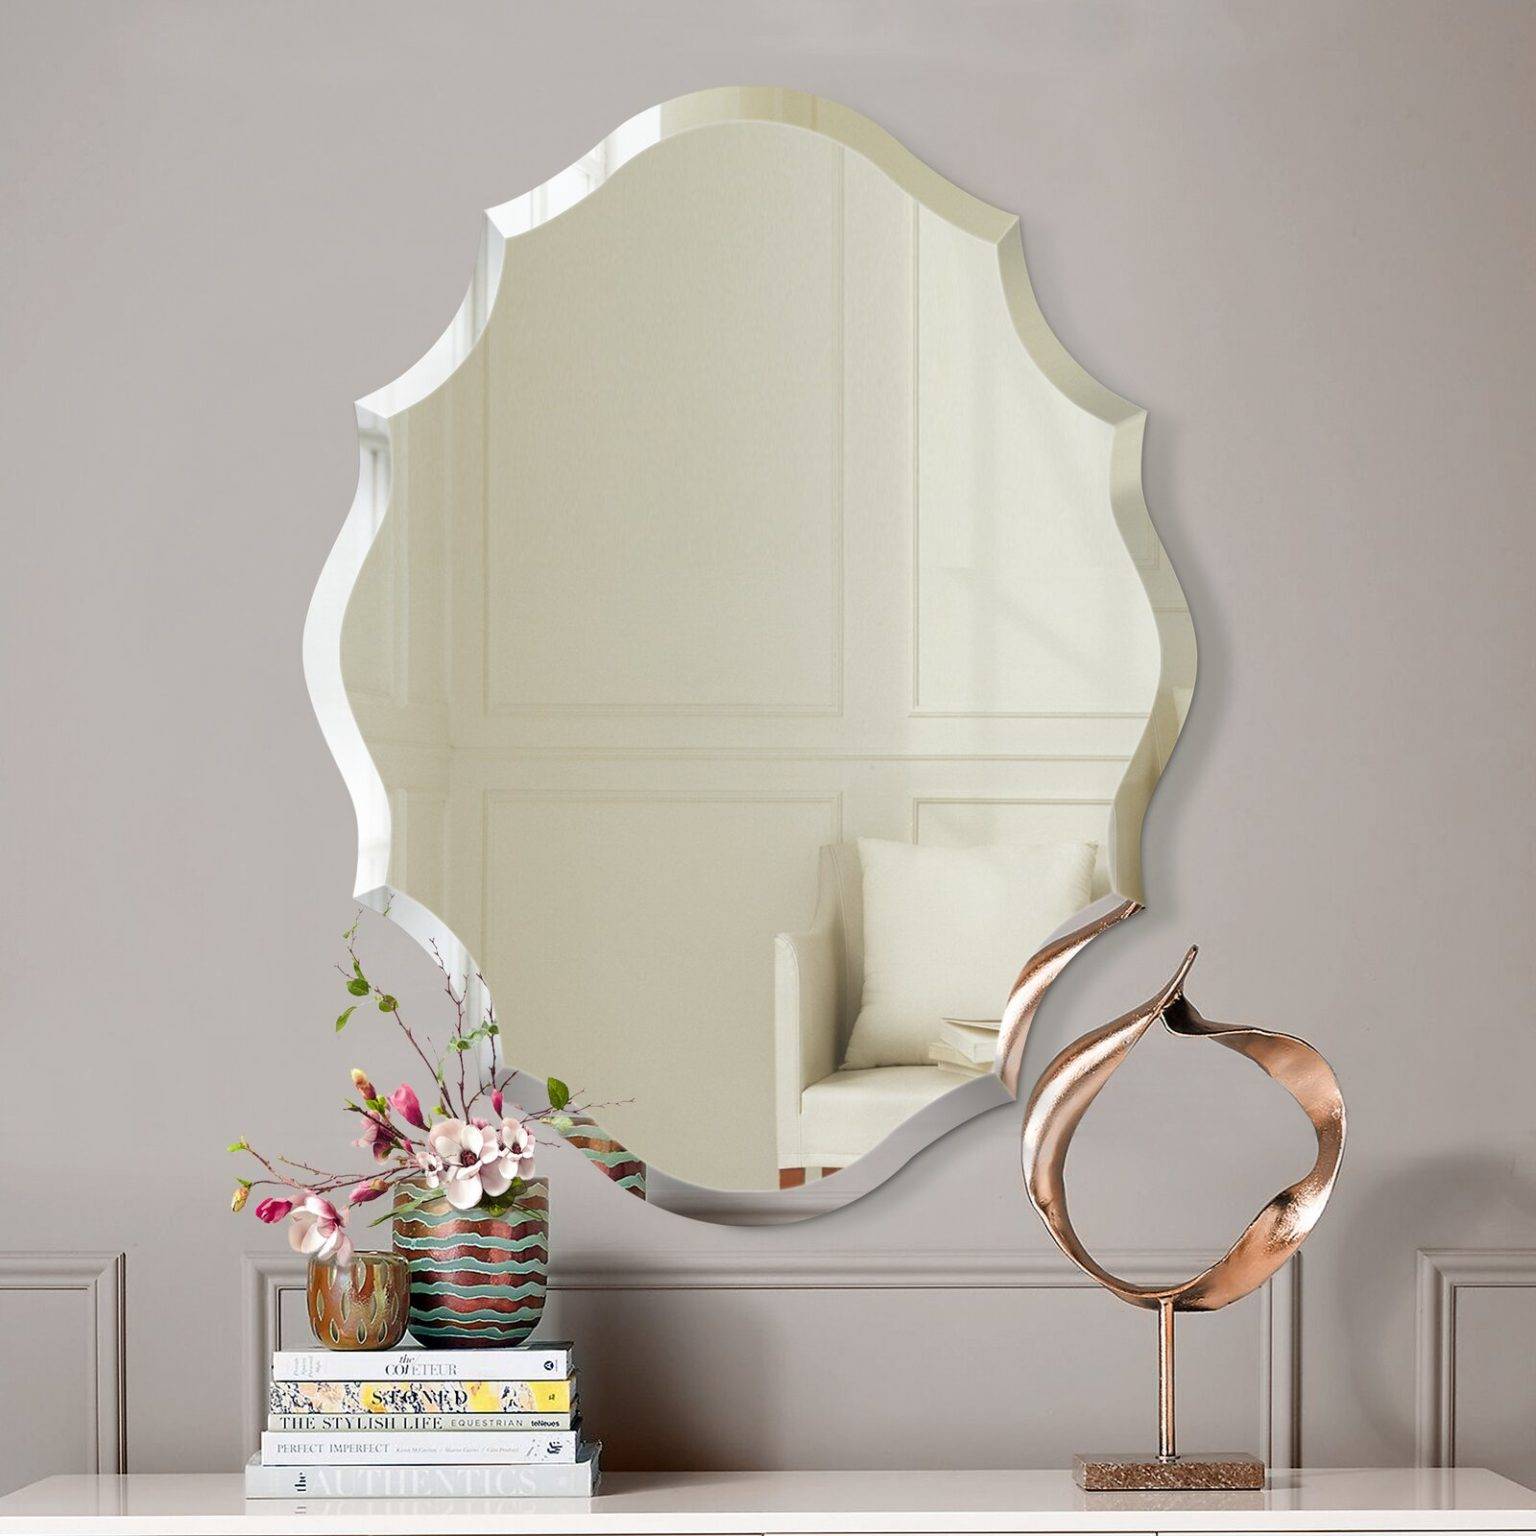 Một chiếc gương tốt có thể làm cho mọi căn phòng trở nên tuyệt vời hơn (P1) | Tạp chí Kiến trúc Việt Nam